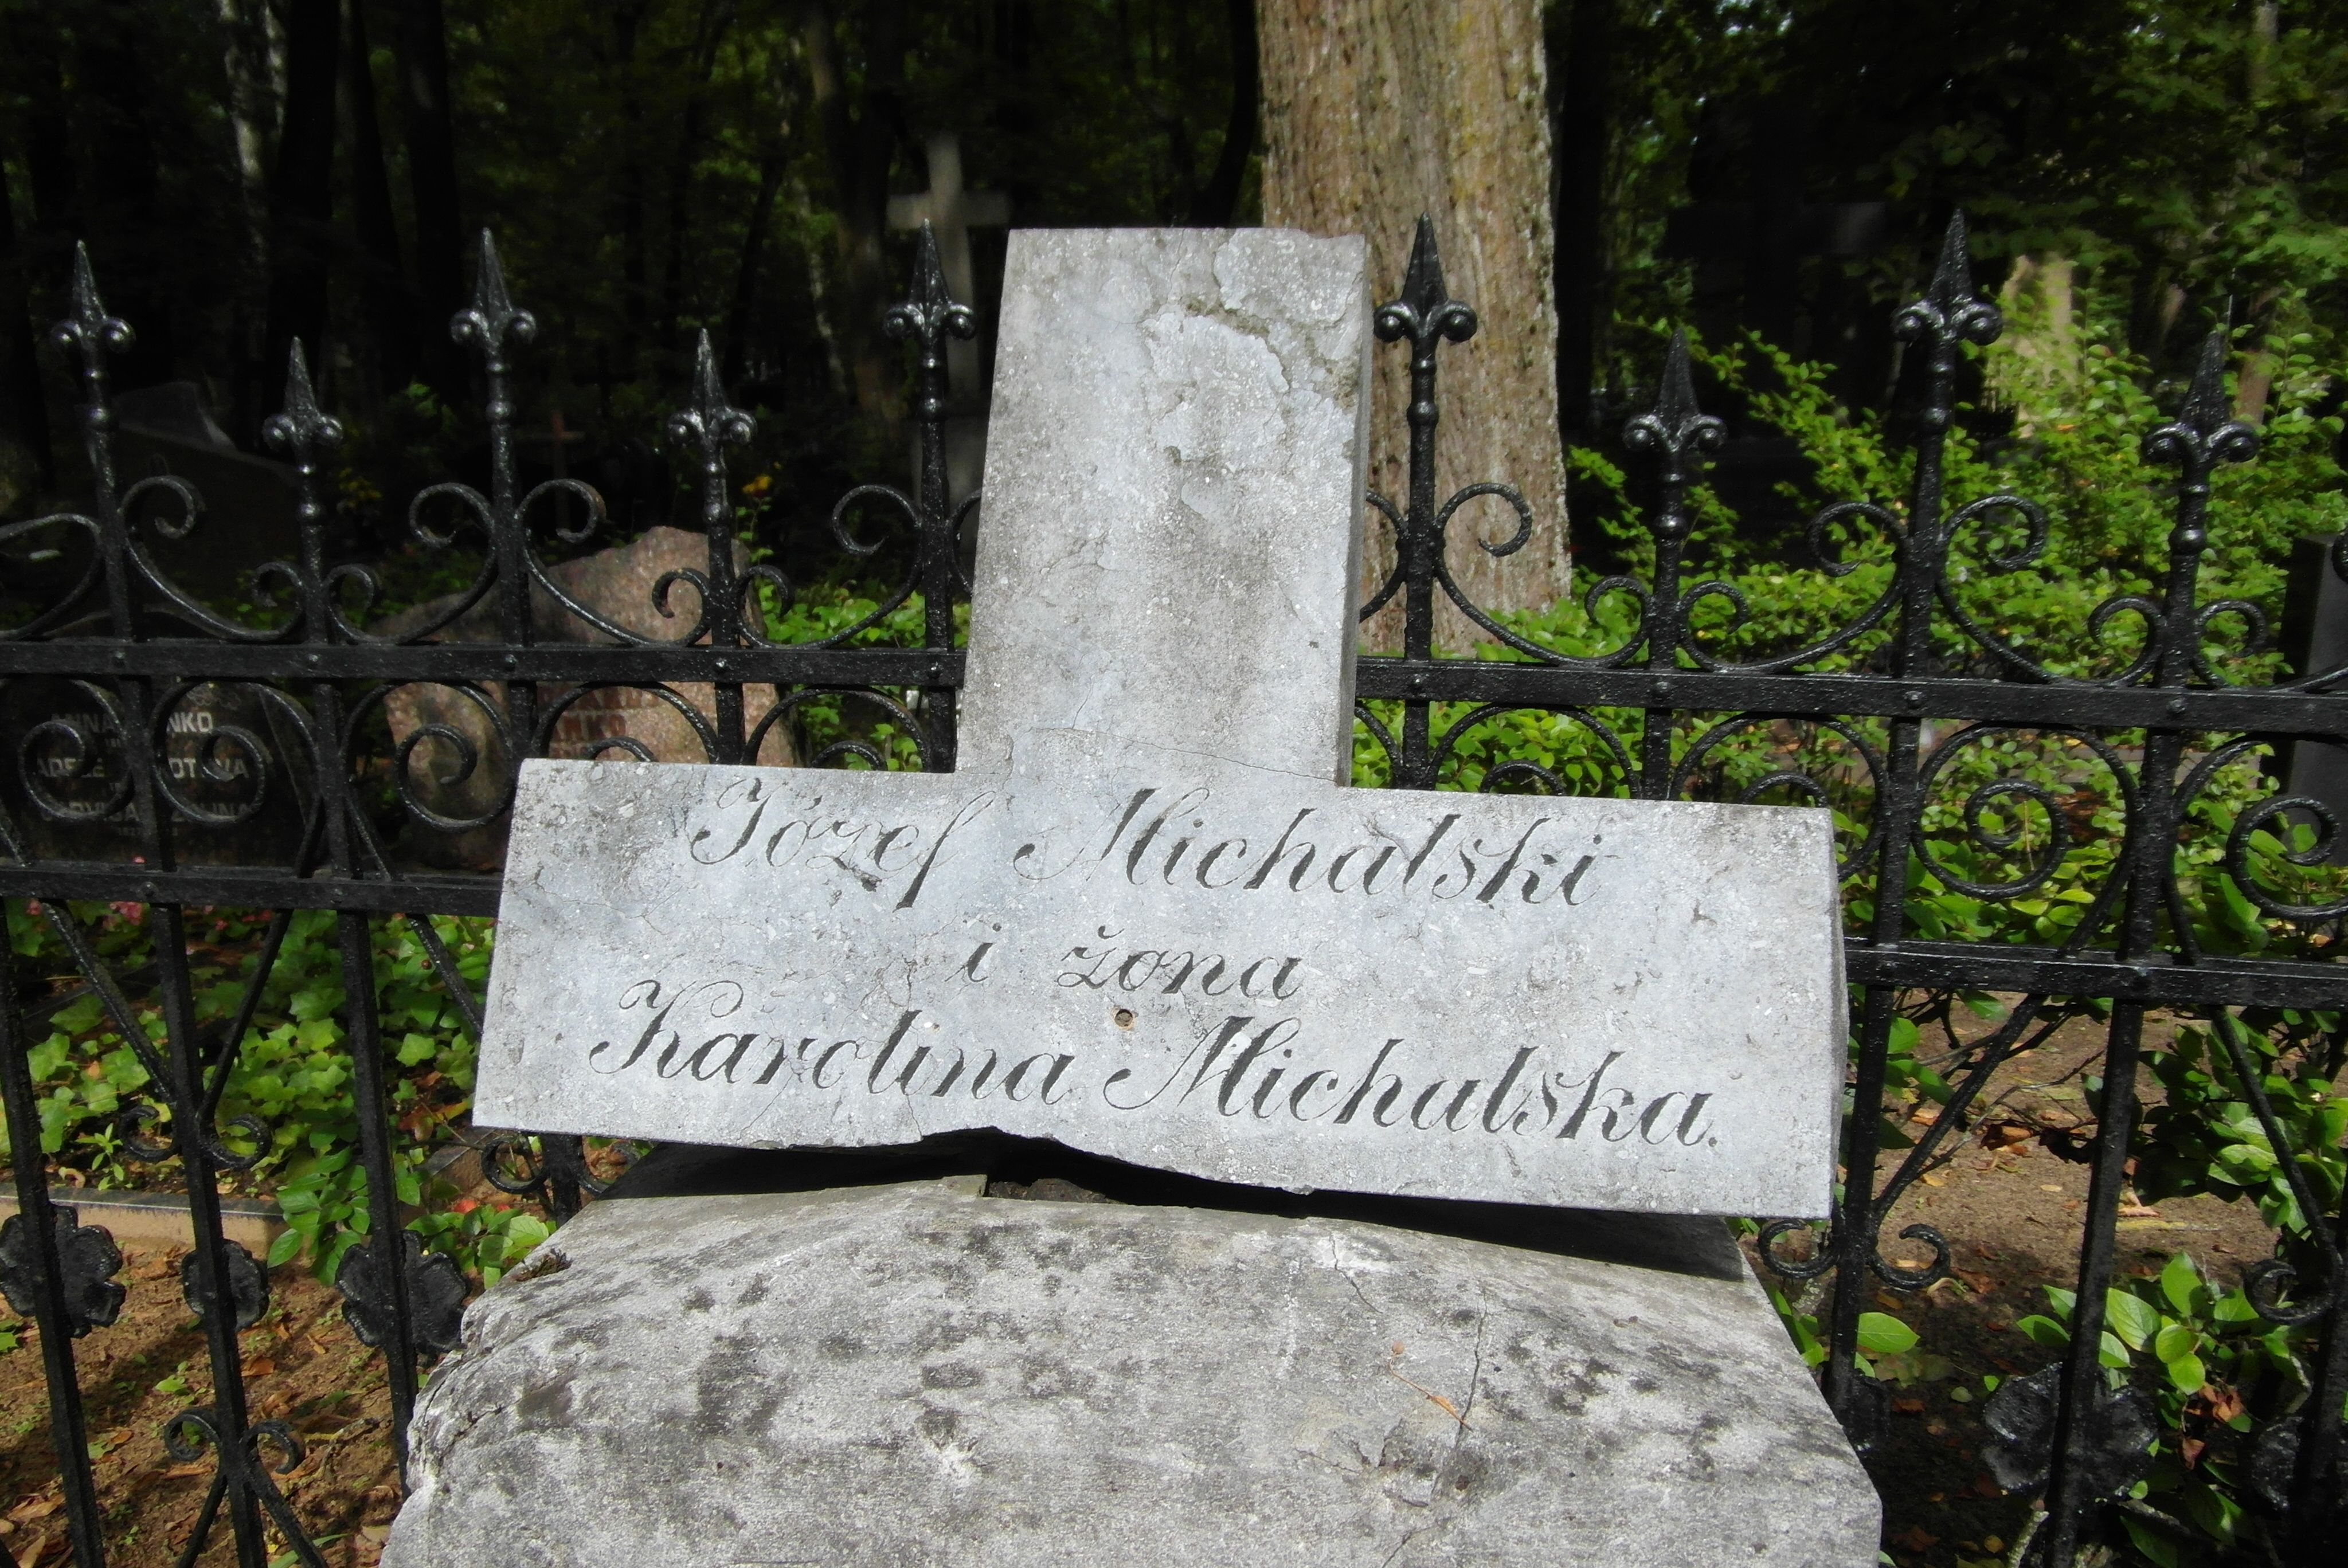 Napis z nagrobka Józefa Michalskiego, Karoliny Michalskiej, cmentarz św. Michała w Rydze, stan z 2021 r.